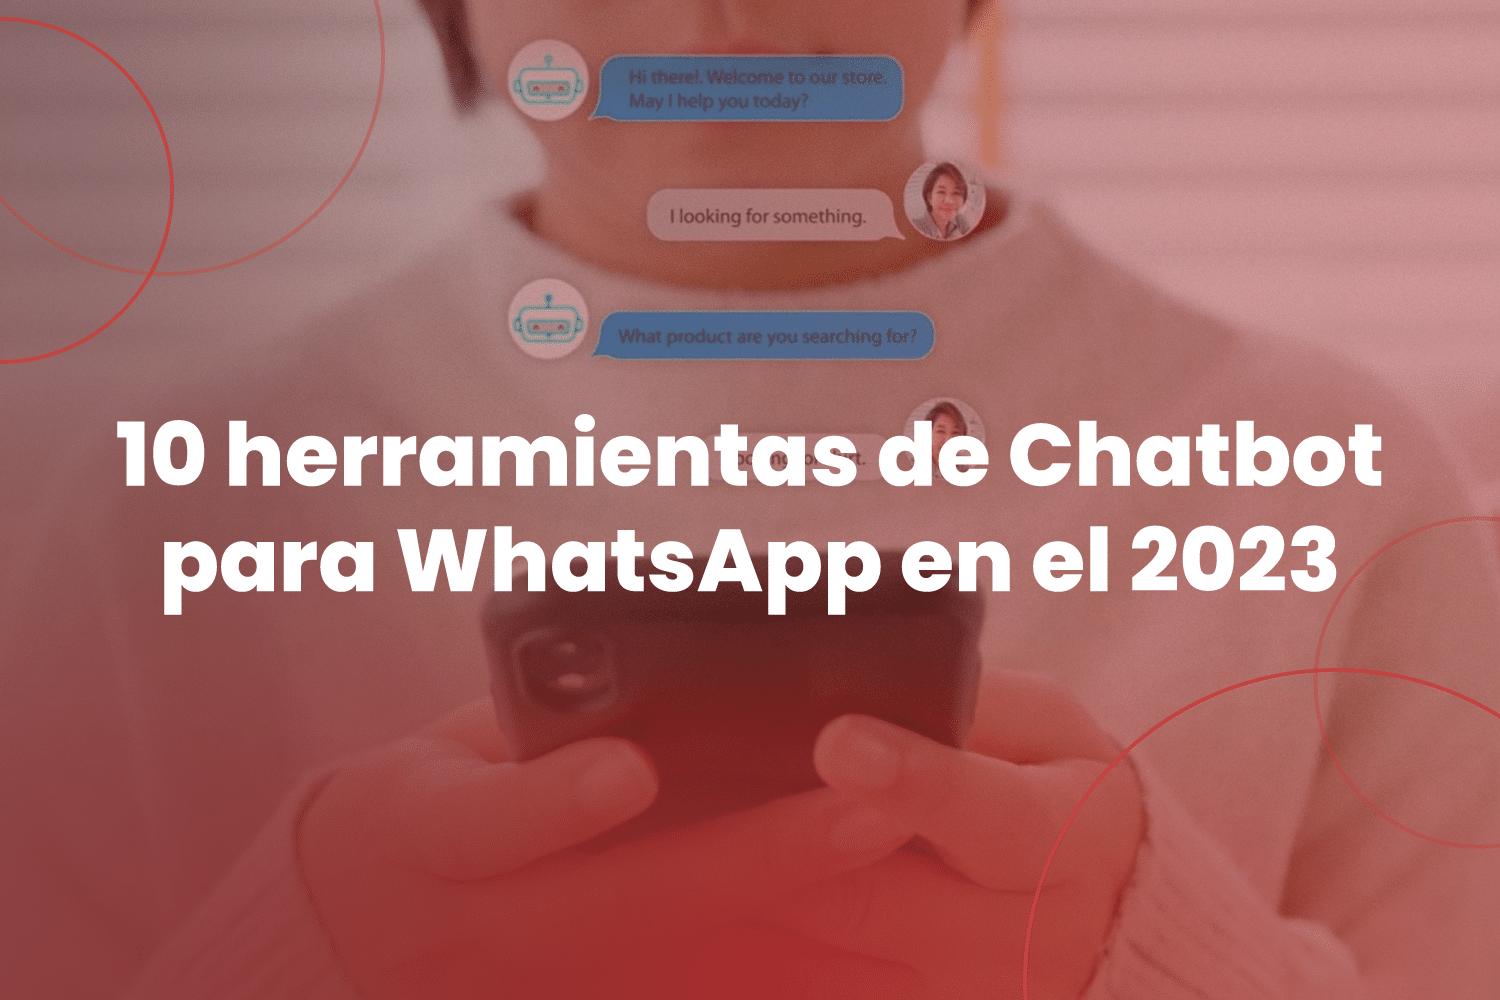 10 herramientas de Chatbot para WhatsApp en el 2023